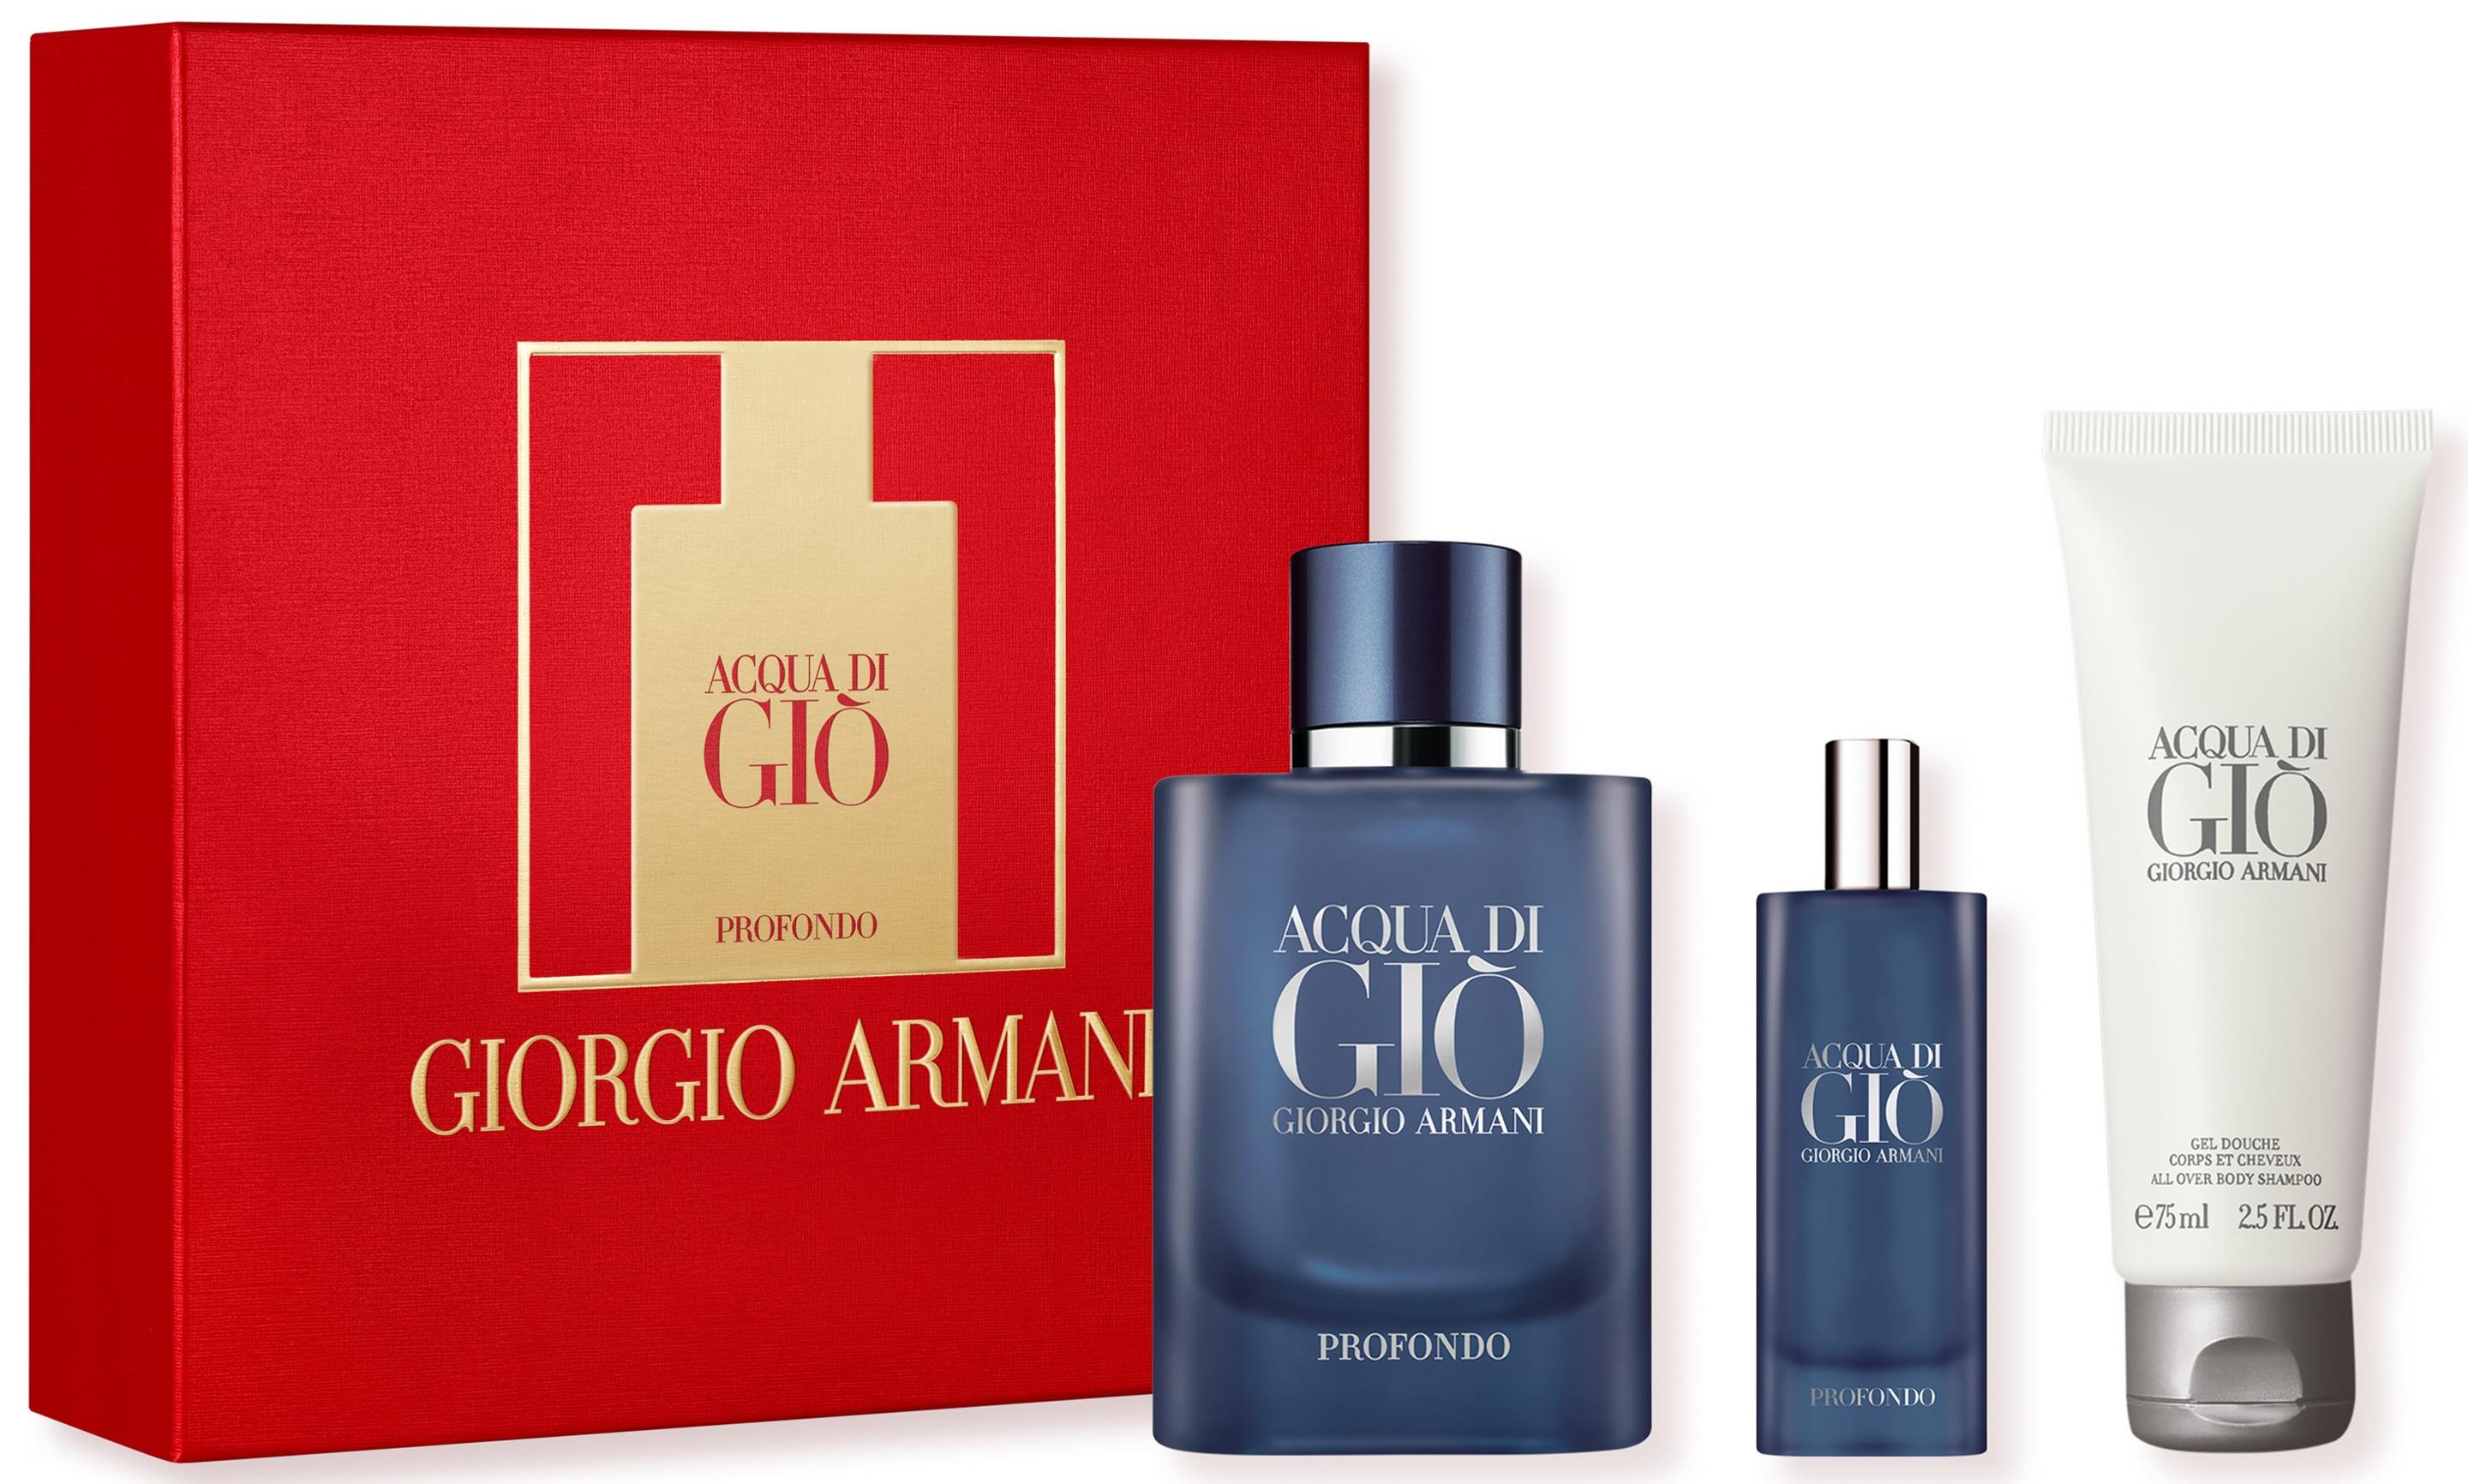 Giorgio Armani Acqua Di Gio Profondo Eau de Parfum Gift Set | lyko.com